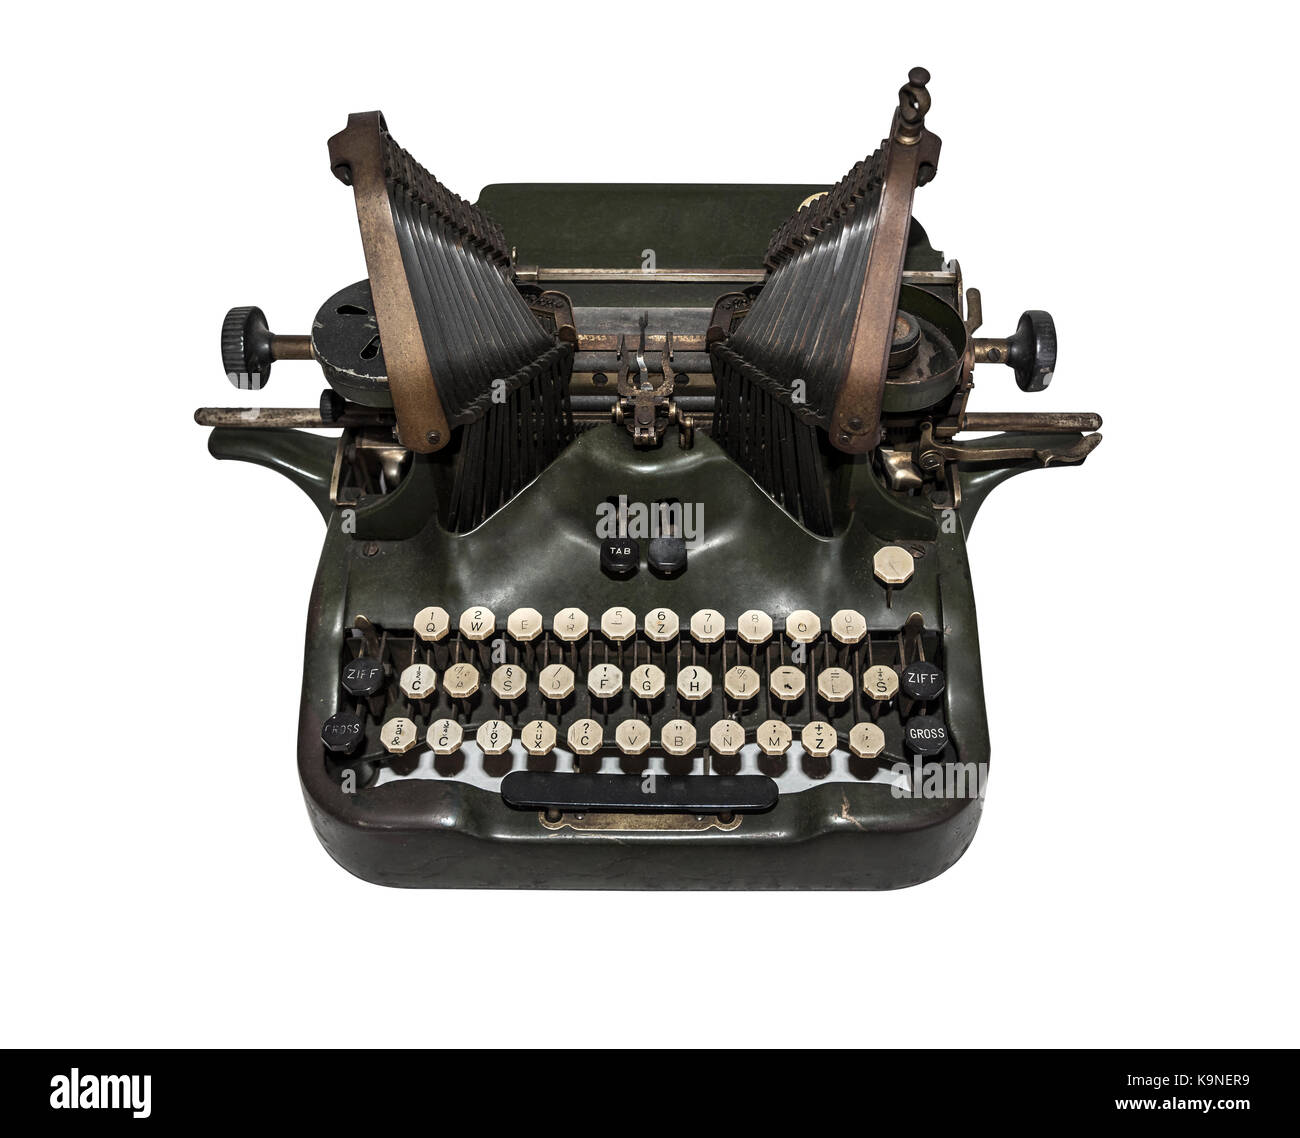 Old typewriter isolated on white background. Stock Photo